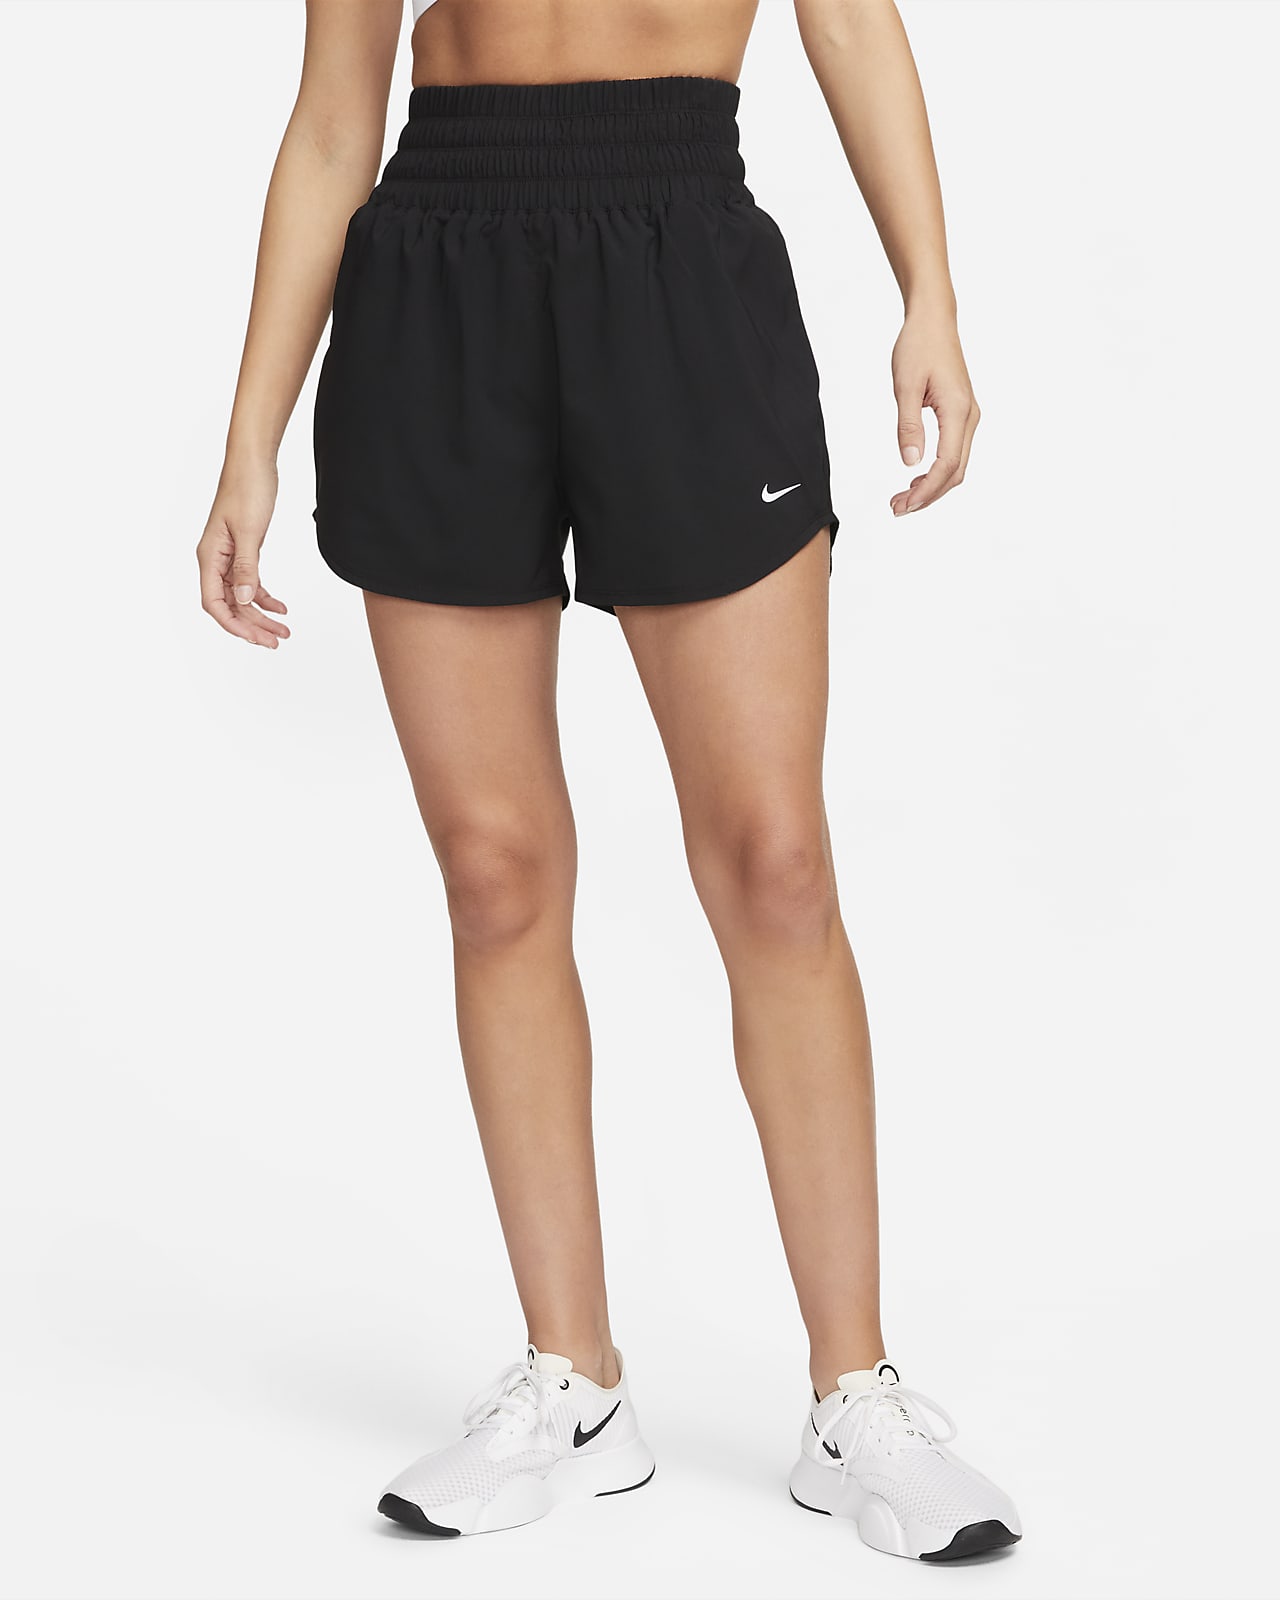 Shorts con forro de ropa interior Dri-FIT de tiro ultraalto de 8 cm para mujer  Nike One. 